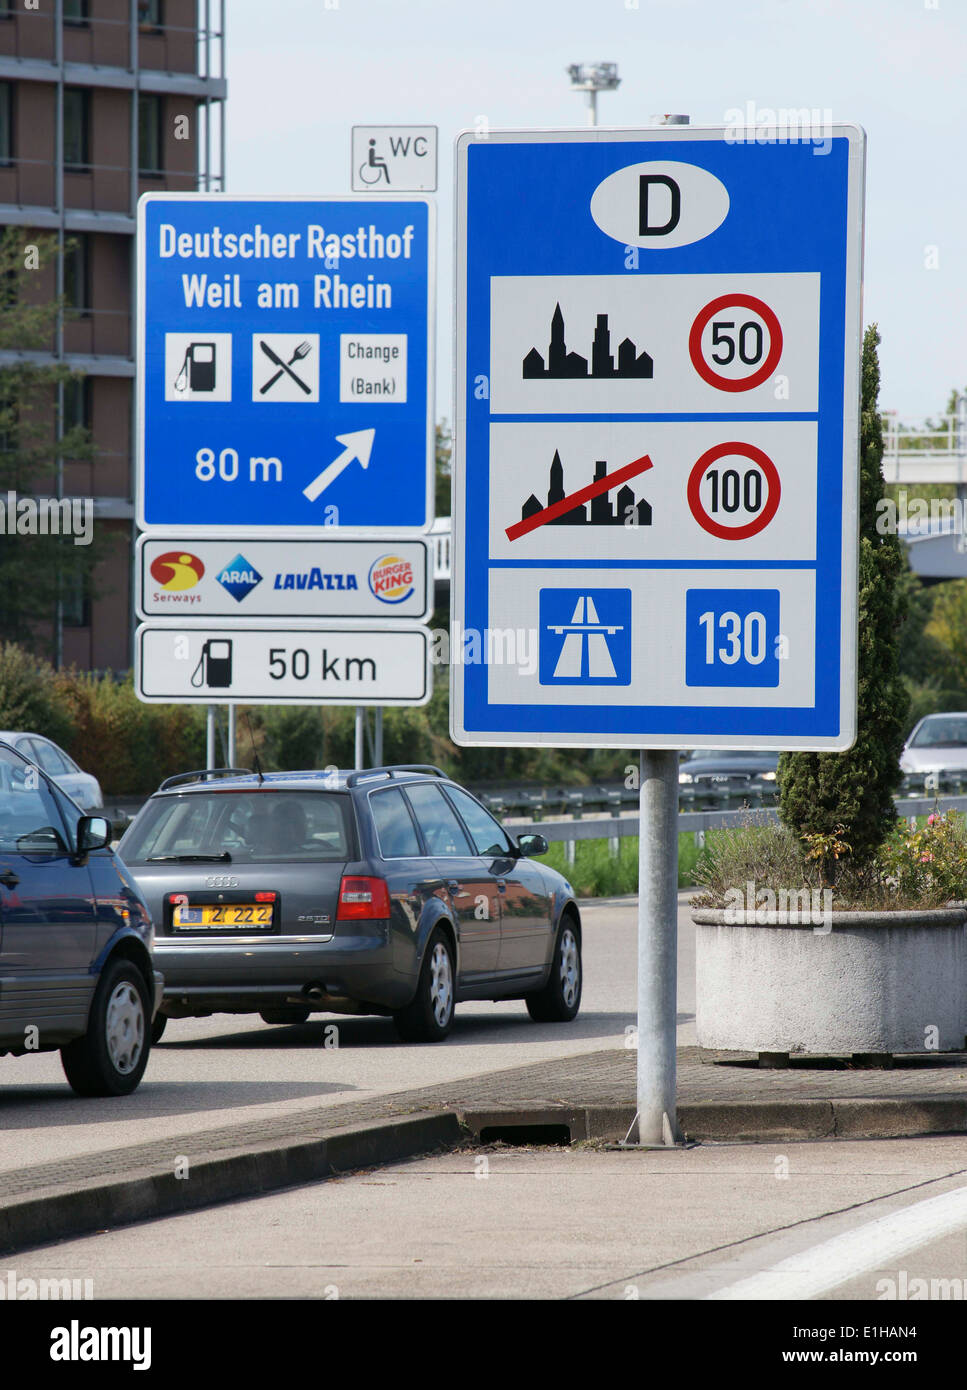 Deutsch - Schweizer Grenze in Weil bin, Rhein, Deutschland und in Basel,  Schweiz Stockfotografie - Alamy